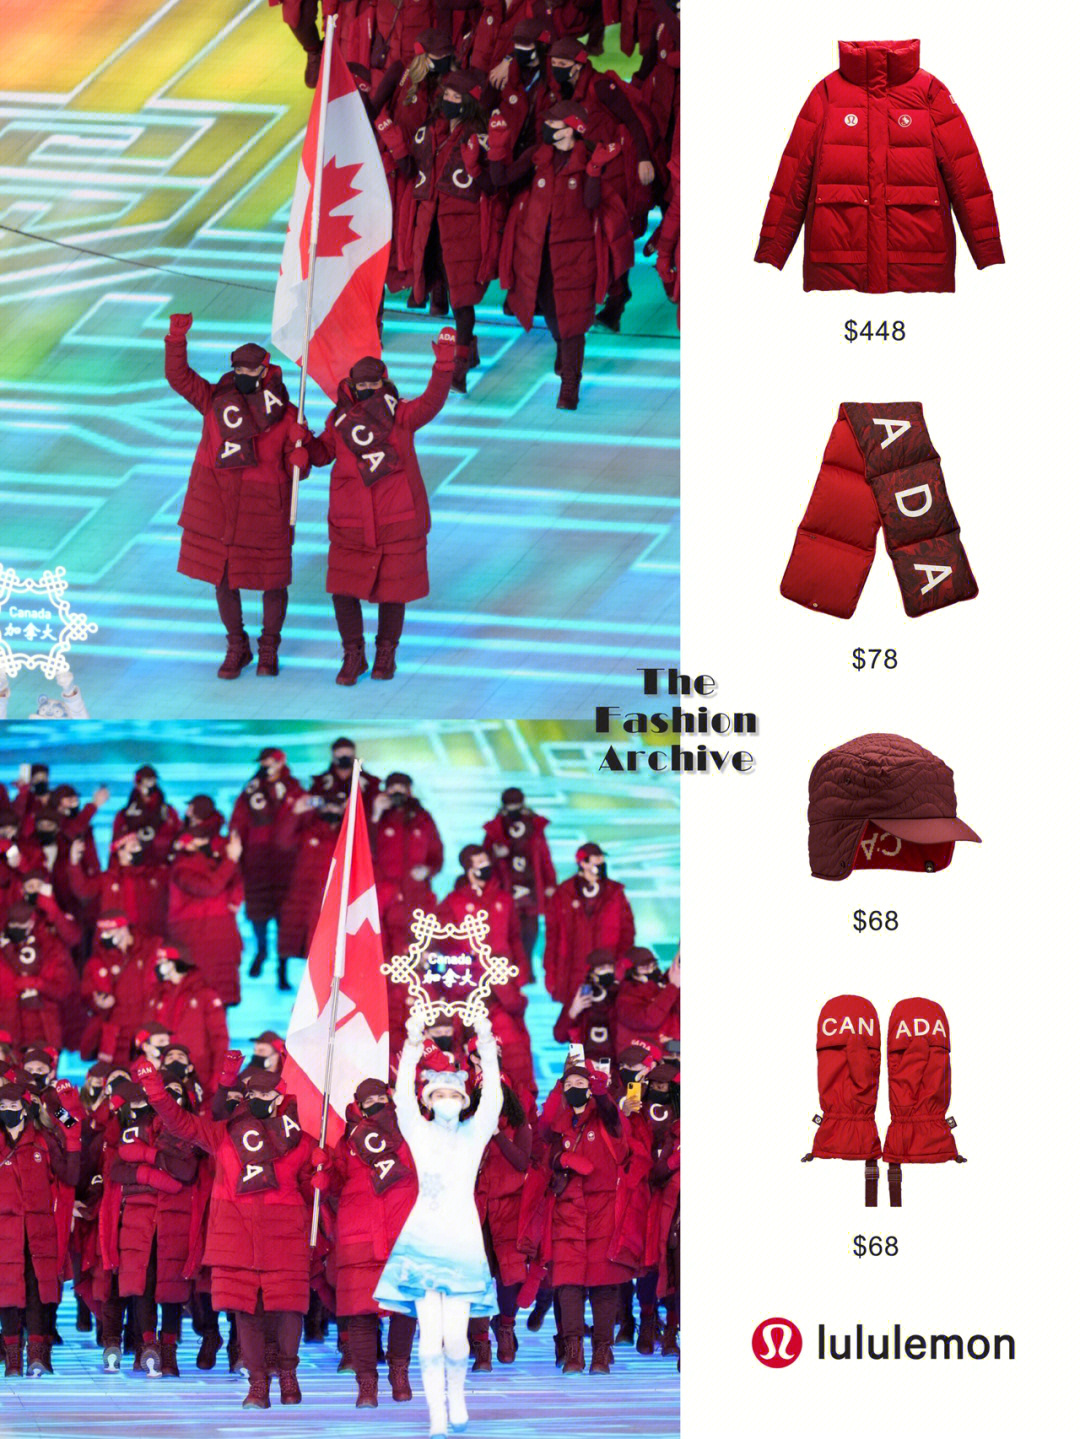 加拿大冬奥会入场服图片